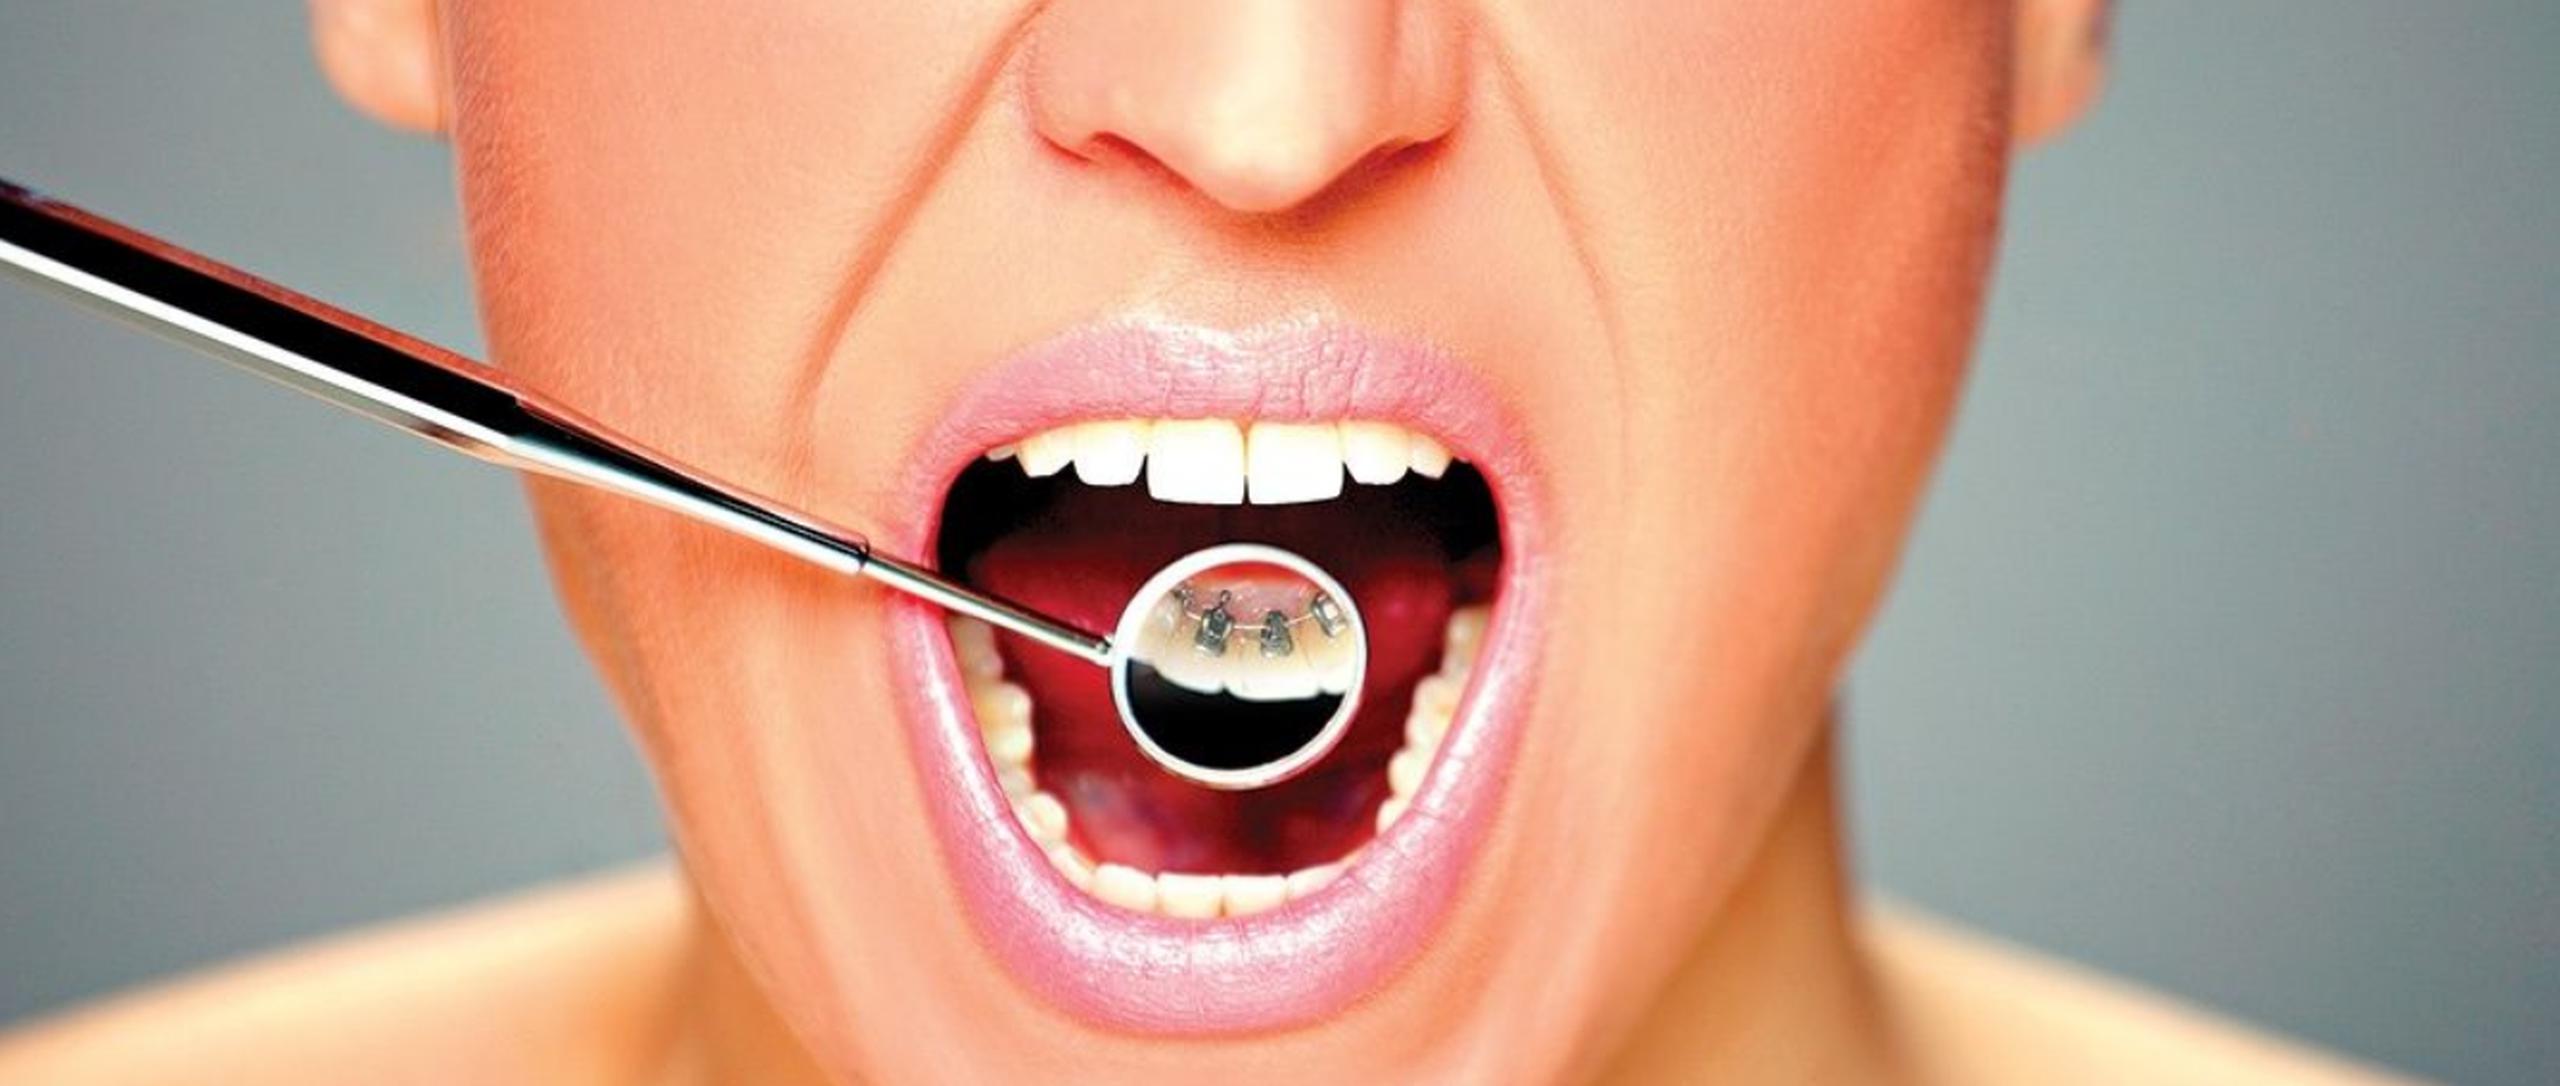 La ortodoncia lingual es una de las opciones para que no se vean los “brackets”, puesto que irán cementados en la parte de atrás del diente.